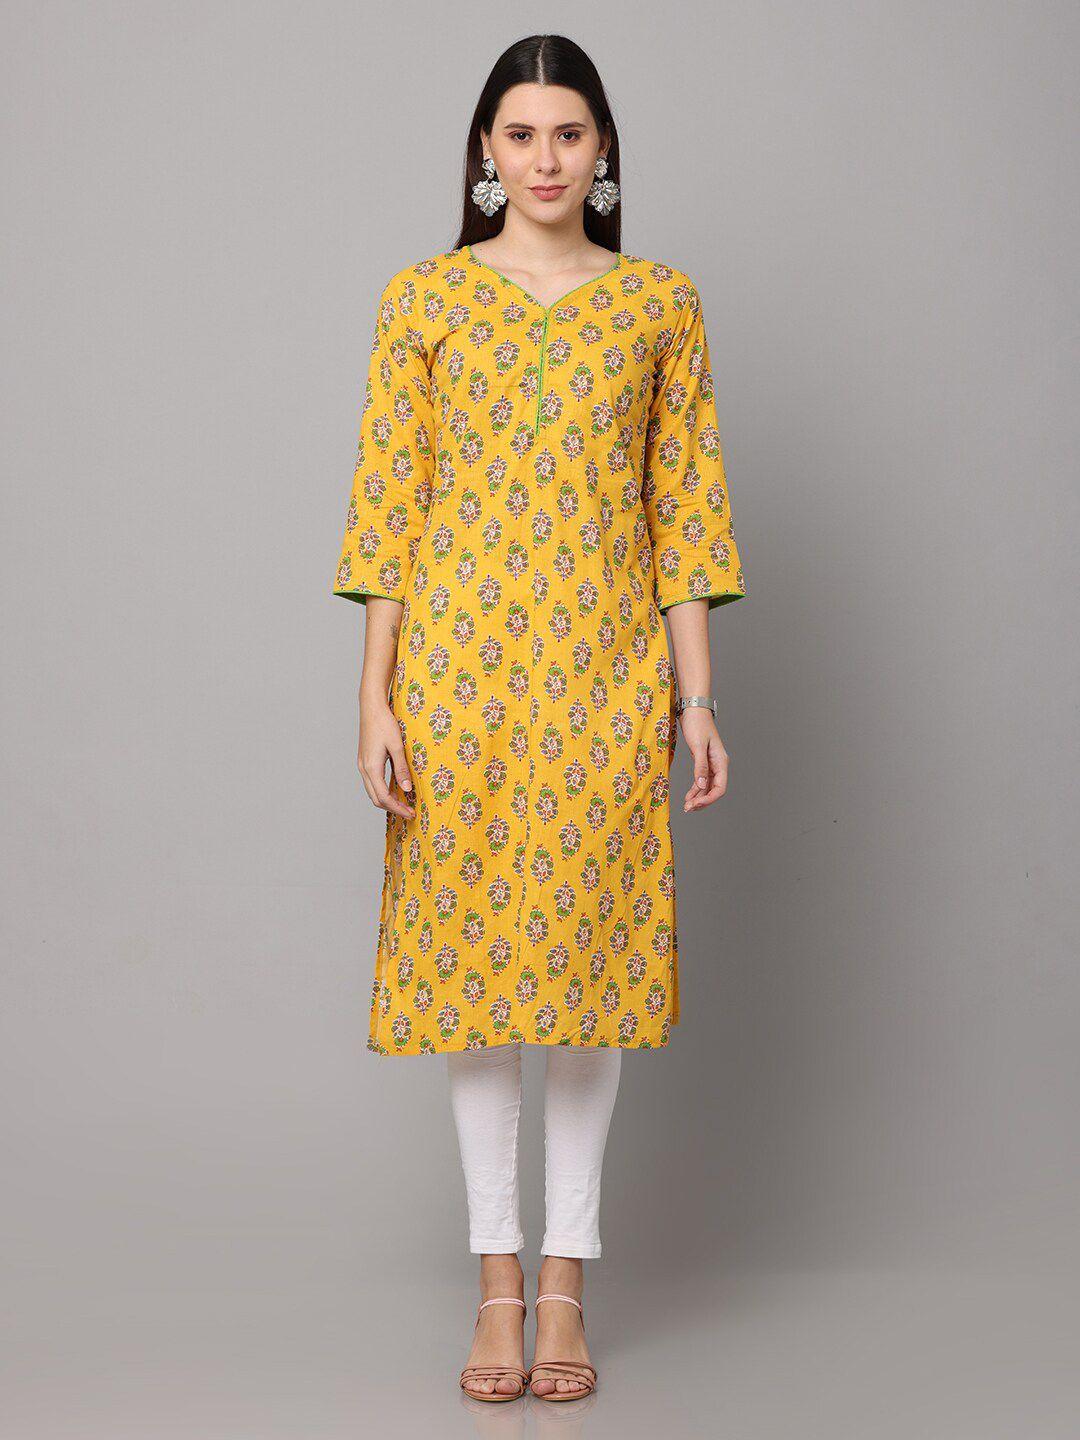 nayra women yellow floral printed floral cotton kurta